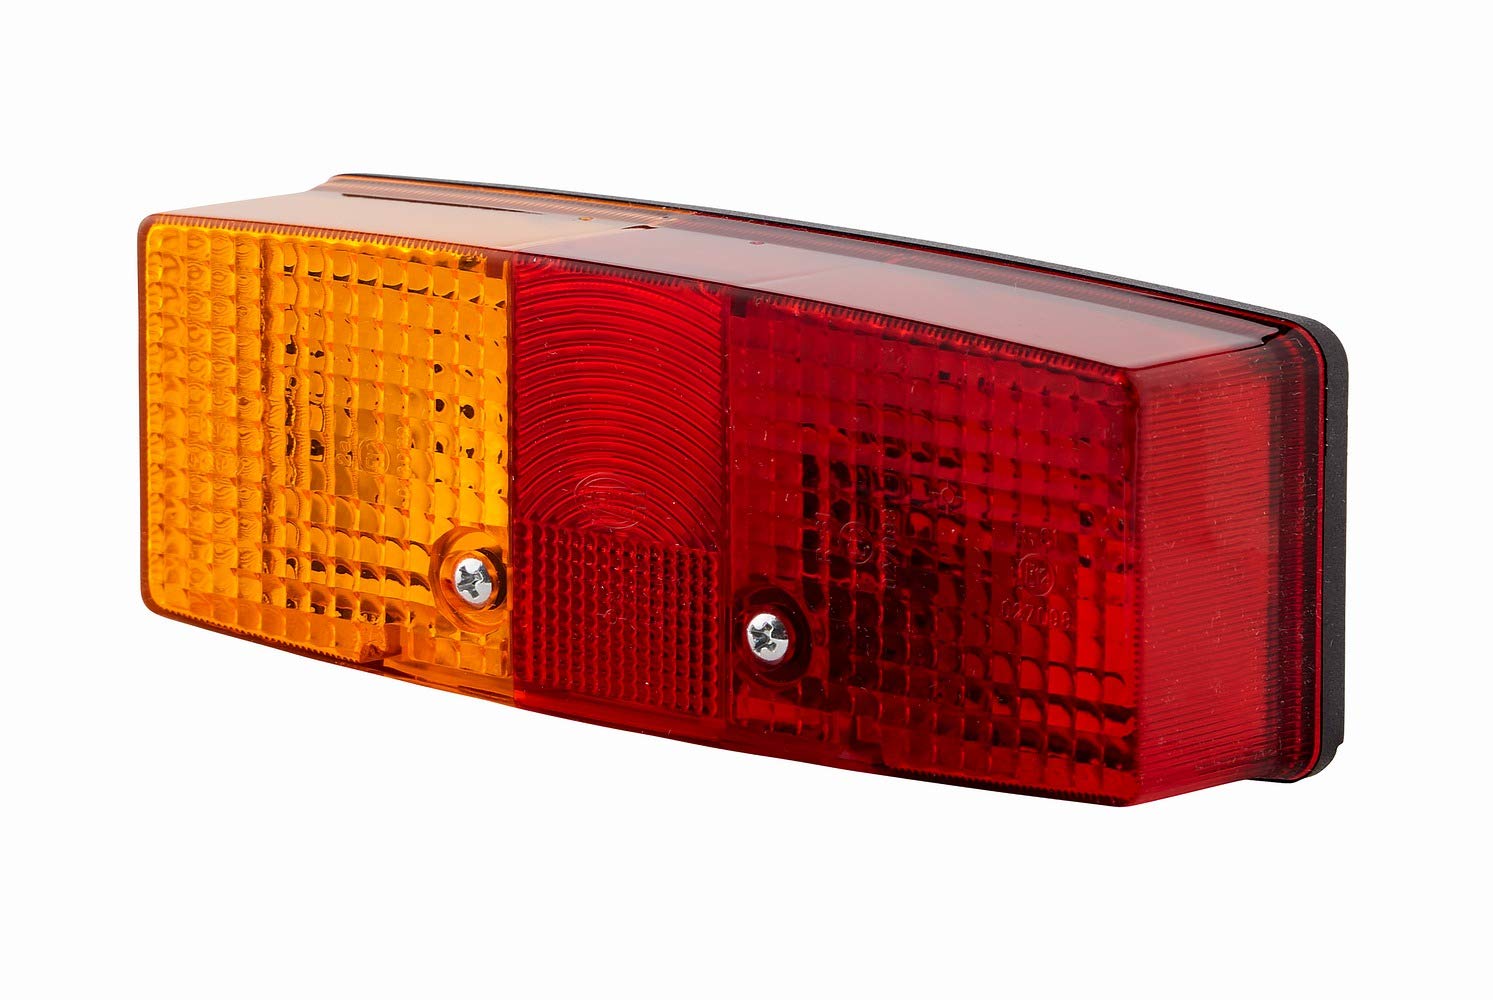 HELLA Rückleuchte - Glühlampe - Anhänger Beleuchtung - 24V / 12V - Anbau/geschraubt - ECE - Lichtscheibenfarbe: rot/gelb/weiß - Stecker: Flachstecker - links - Menge: 1 - 2SE 997 111-011 von Hella